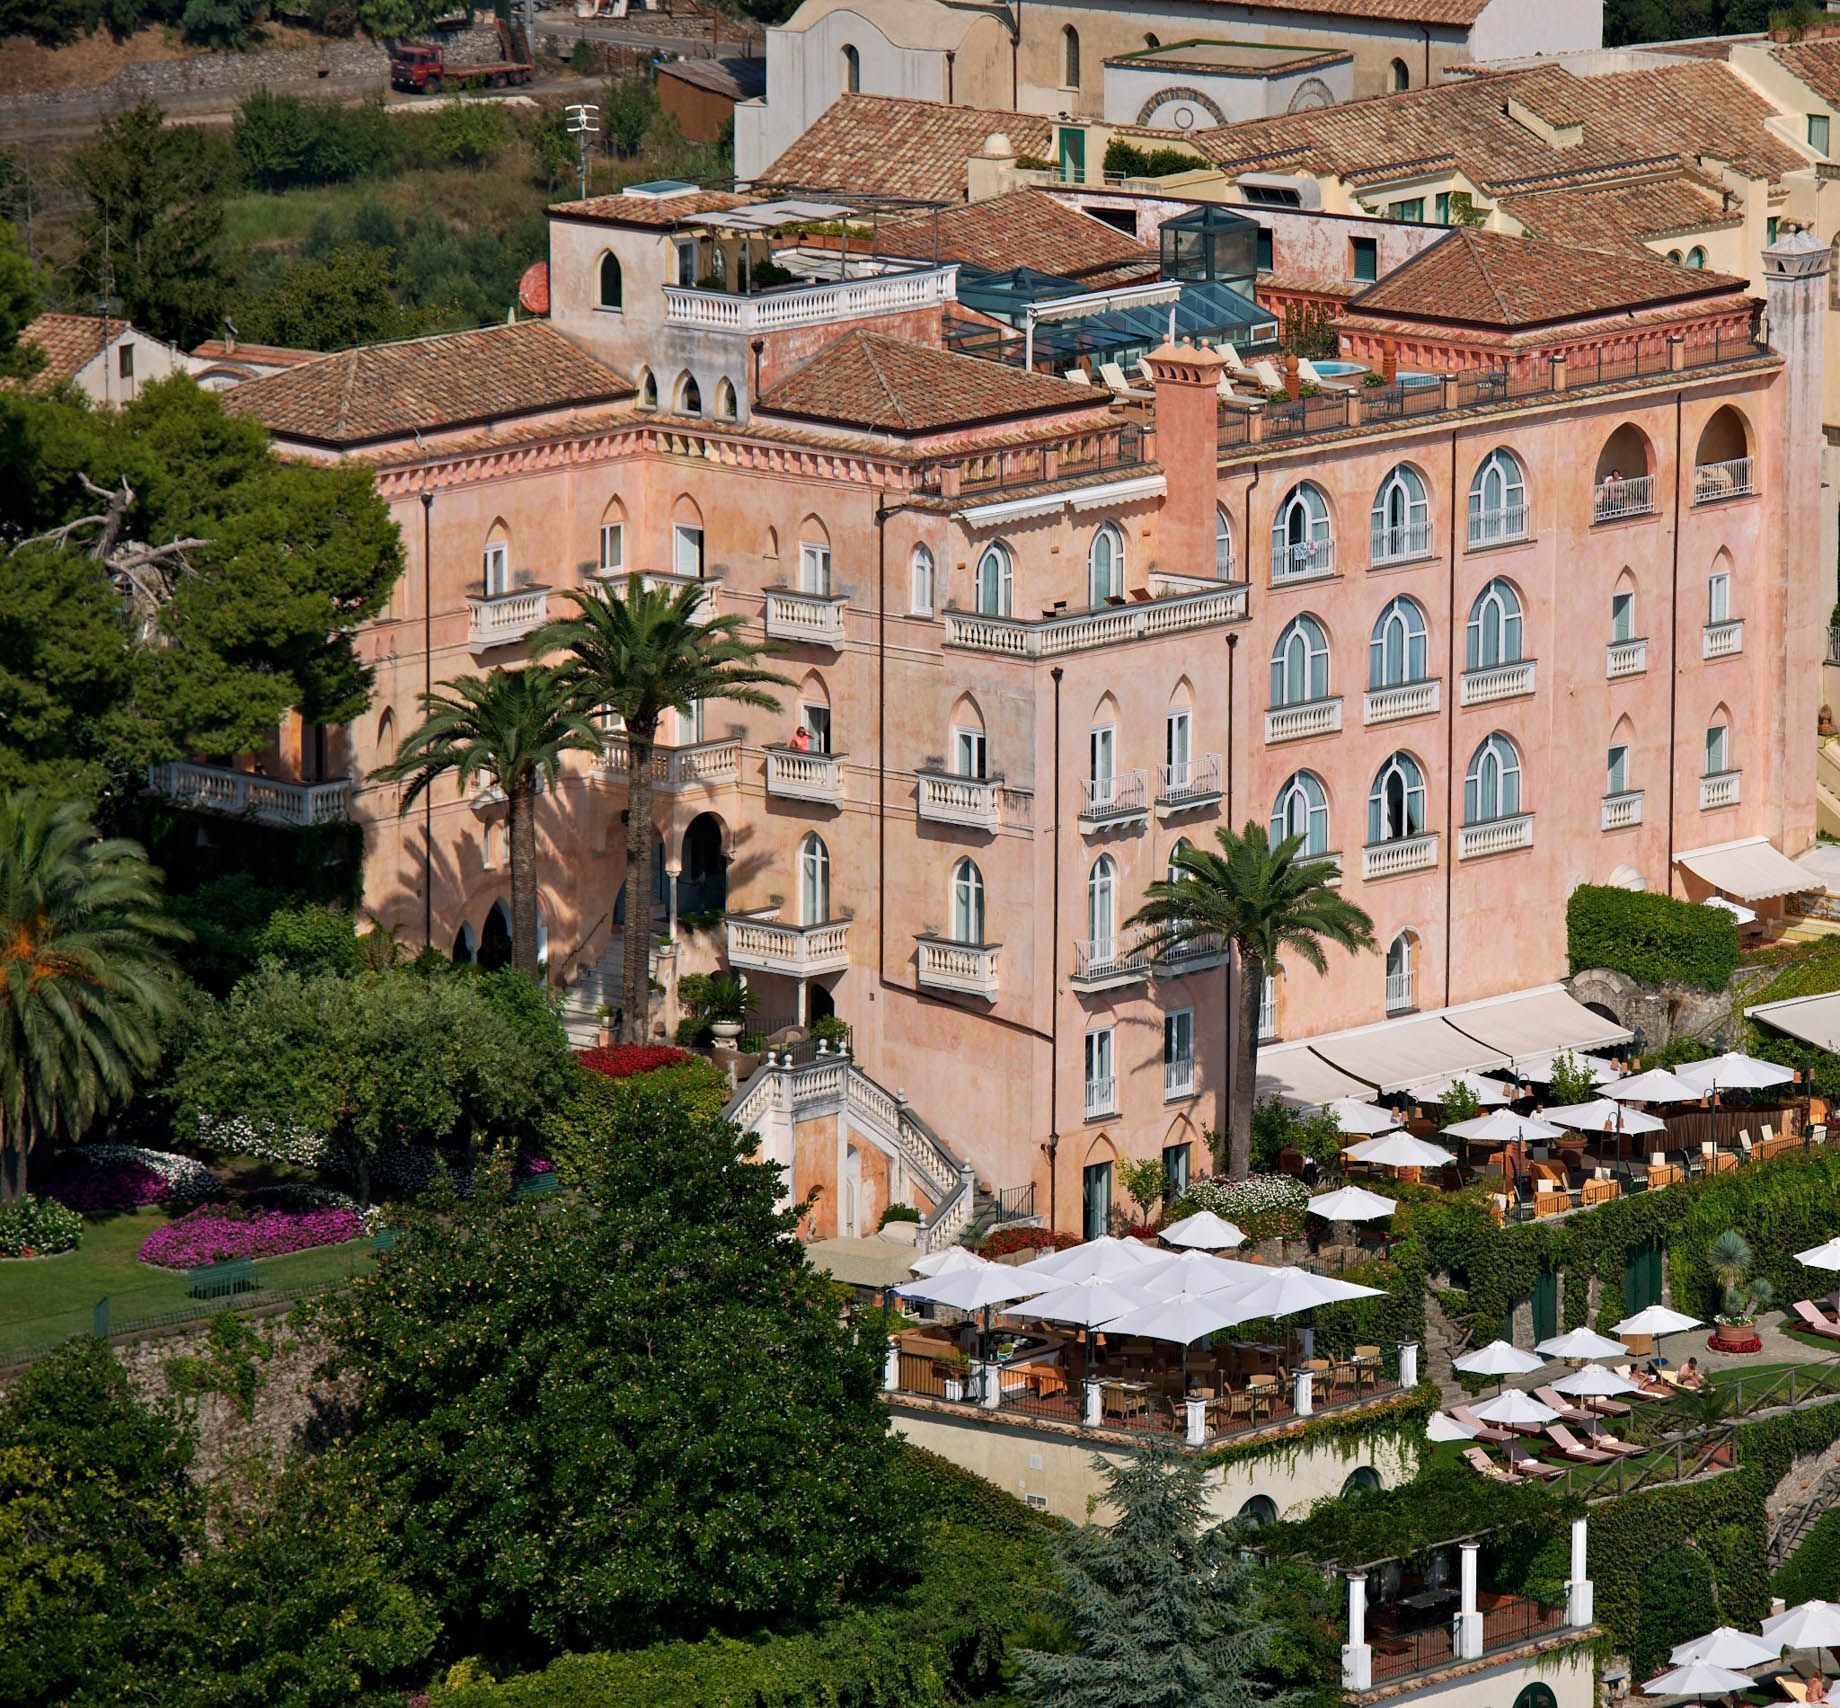 Palazzo Avino Hotel – Amalfi Coast, Ravello, Italy – Aerial View